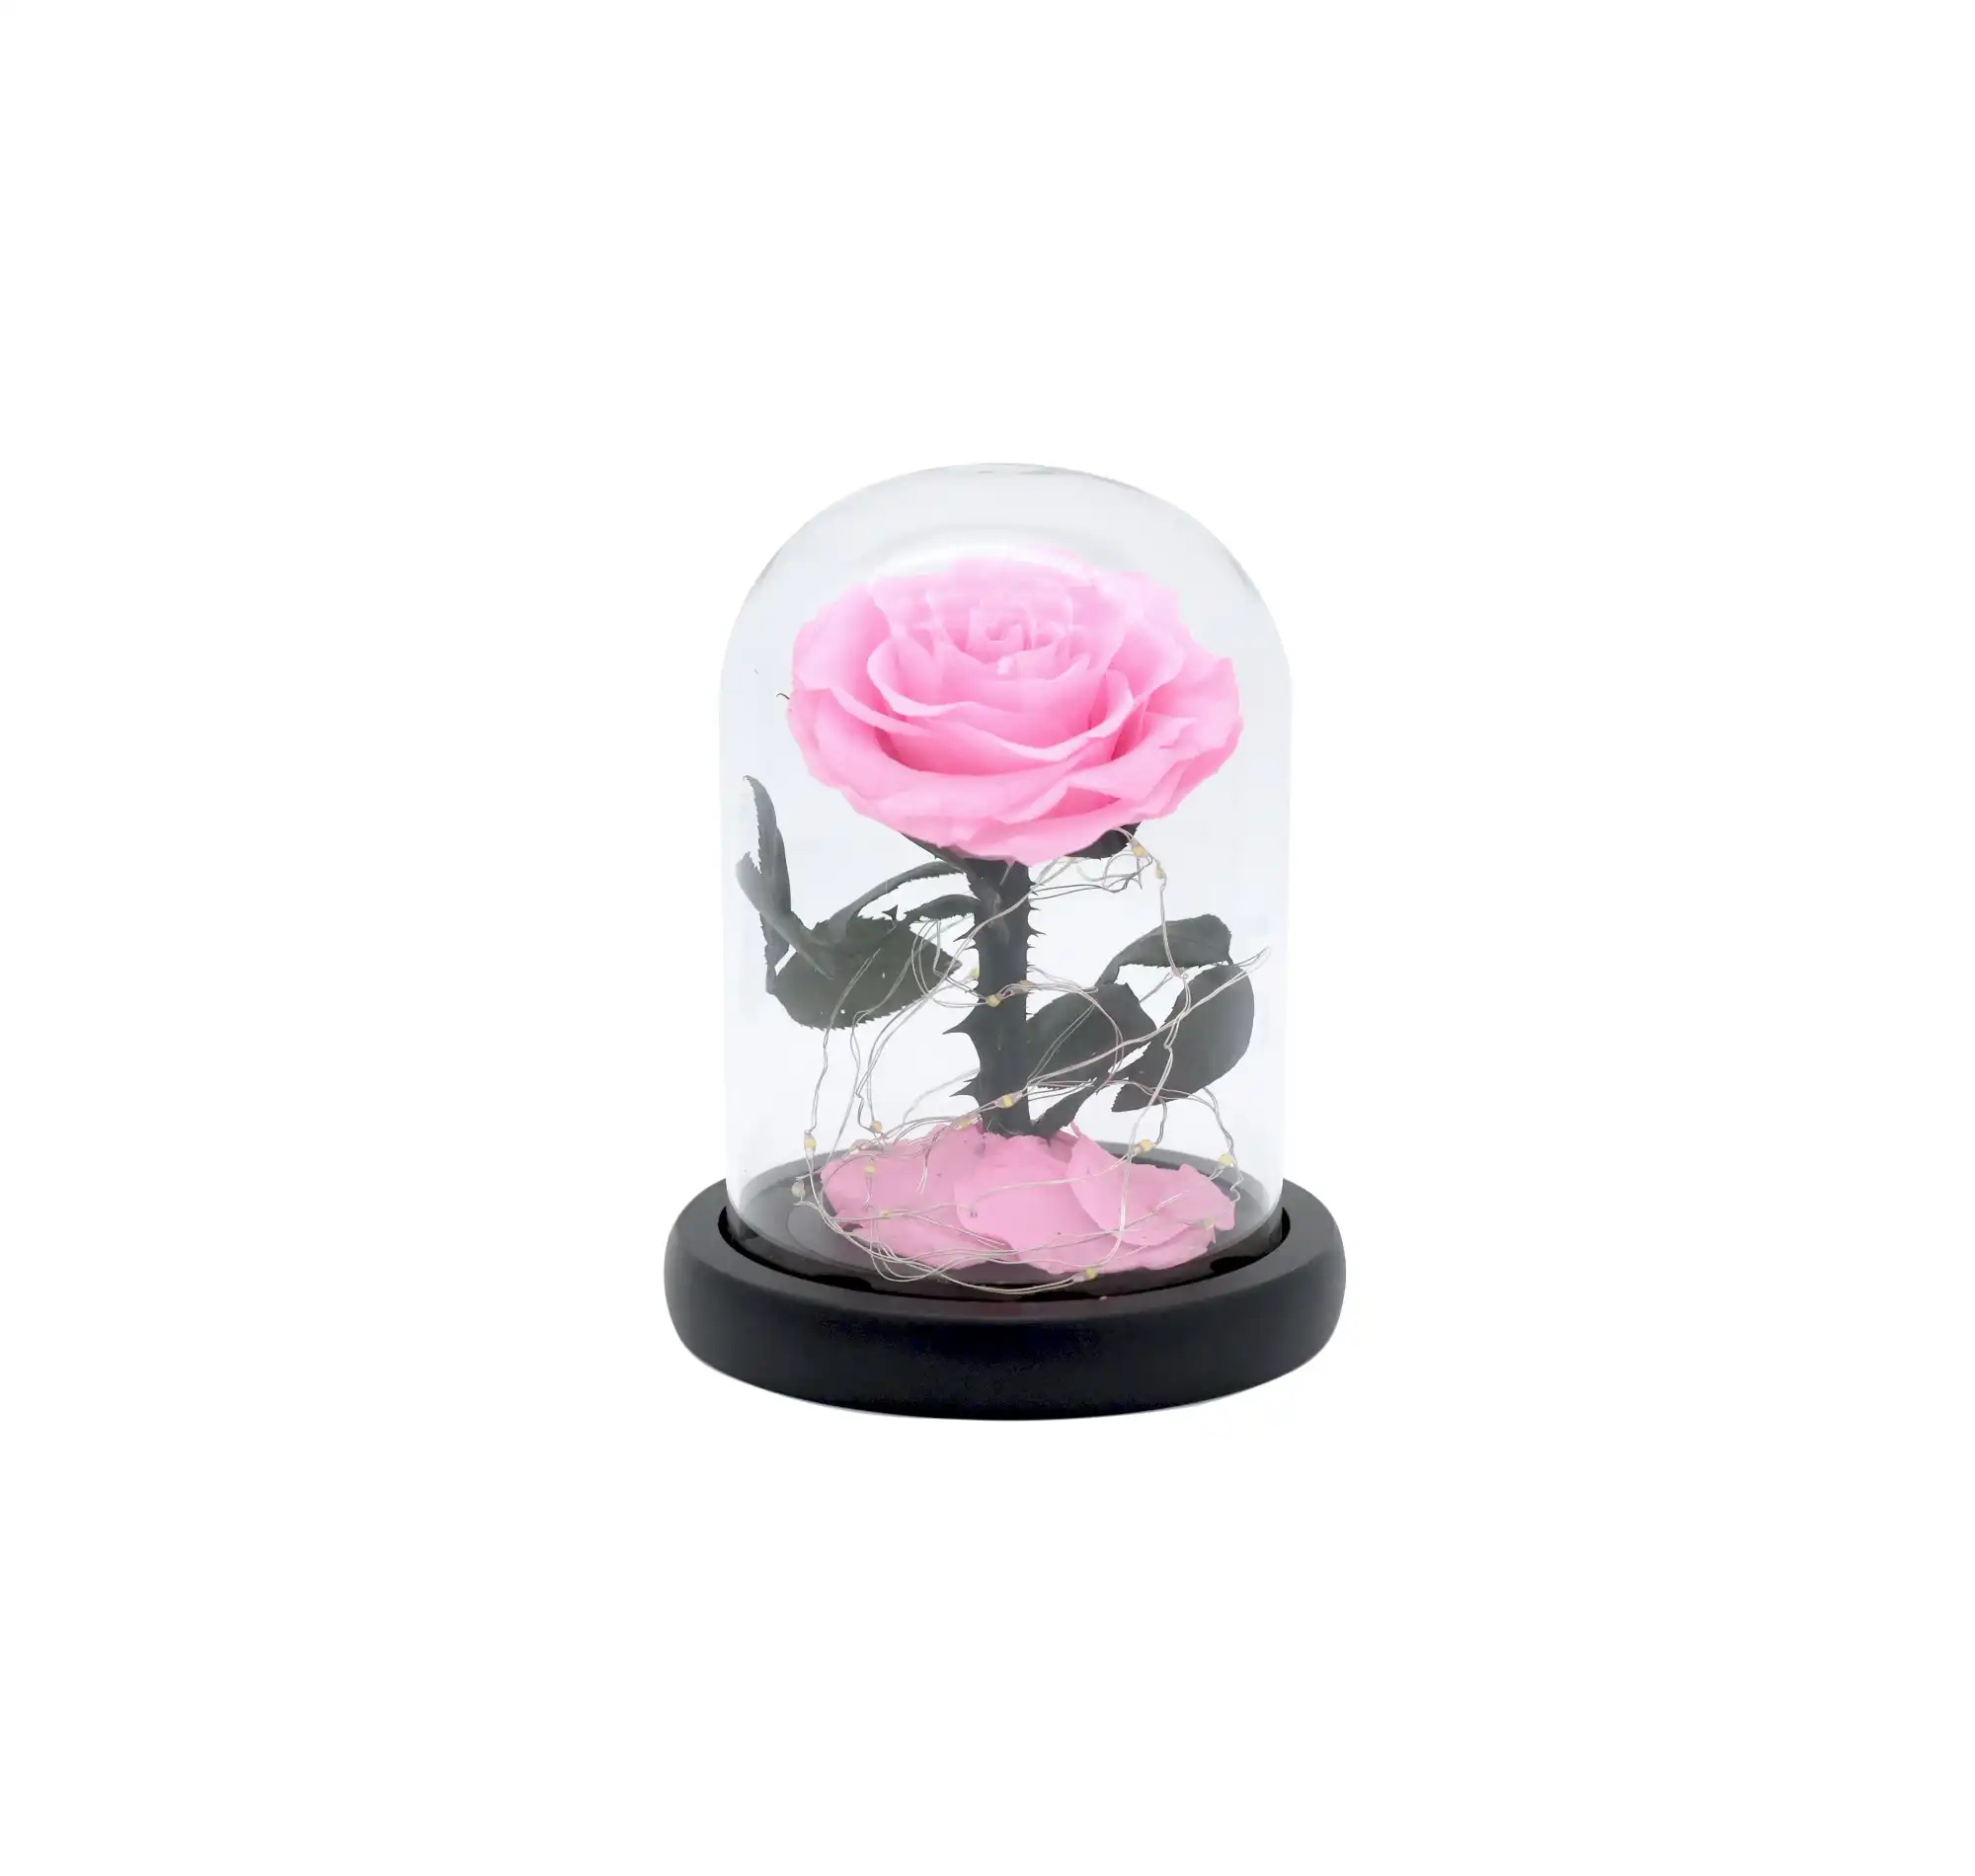 Vistara Timeless Rose - Natural 15cm Pink Preserved Rose With LED Light